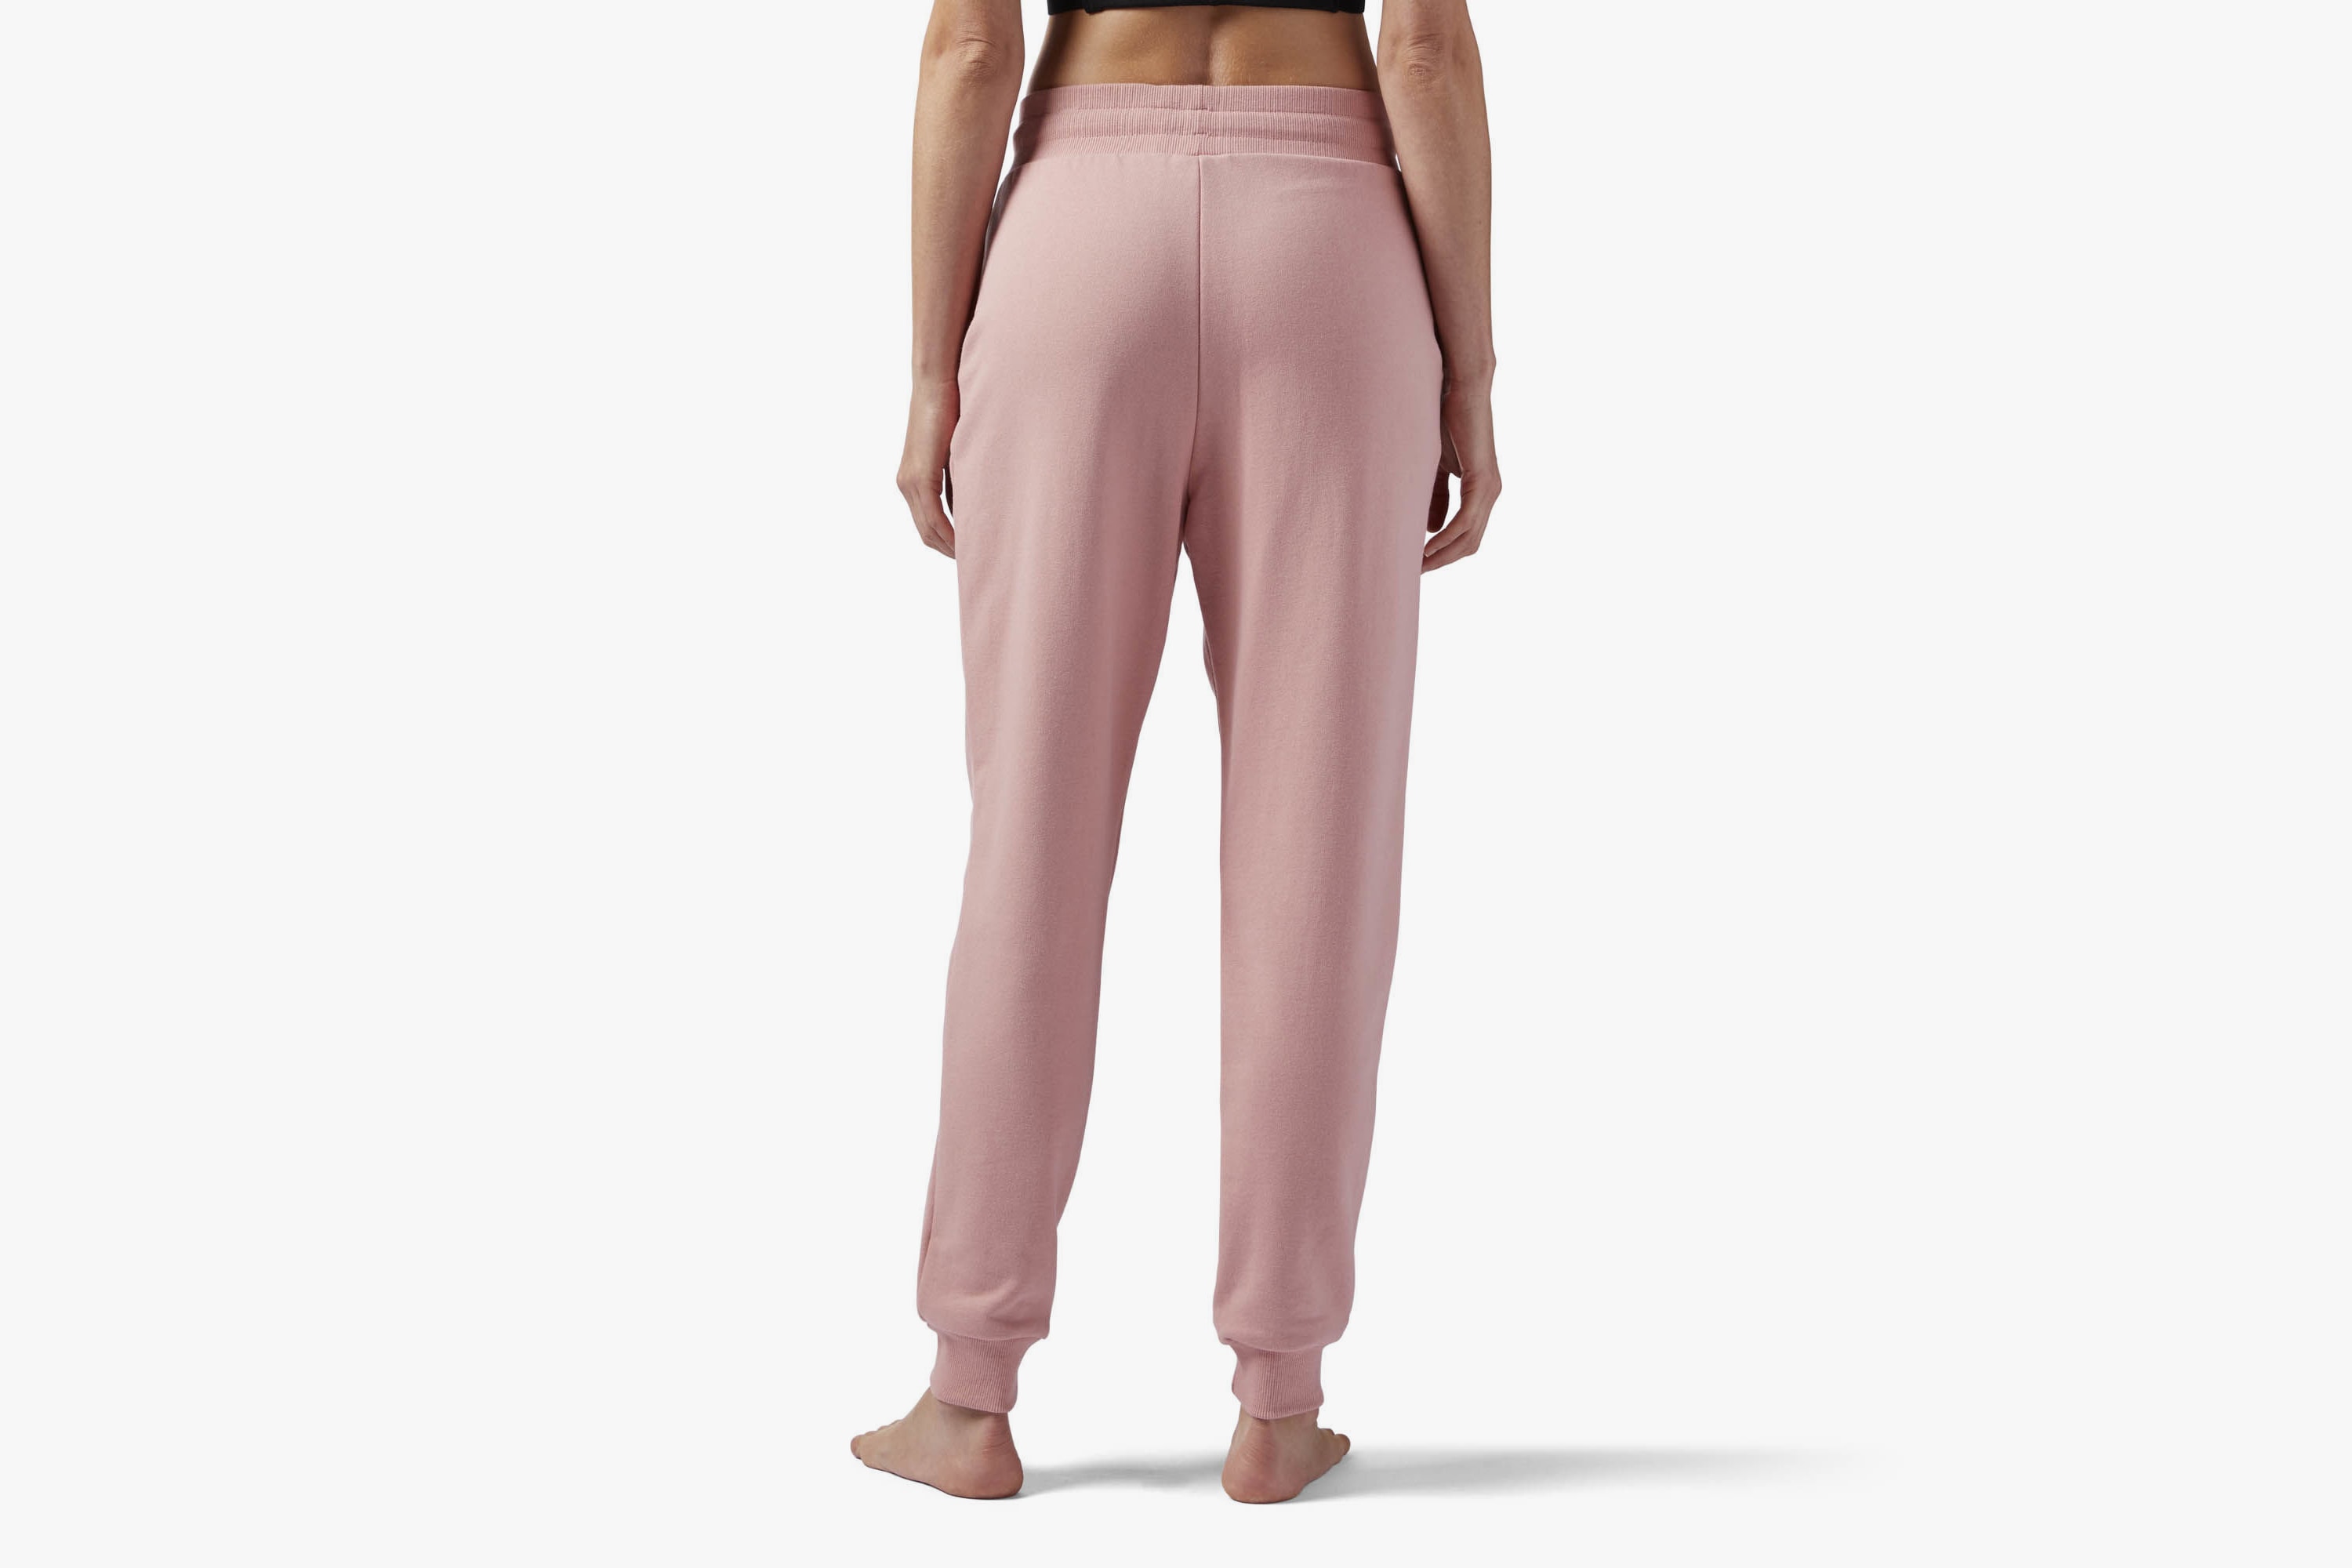 Reebok Pink French Terry Sweatpants Cozy Loungewear Trousers Joggers Rose Pastel Streetwear